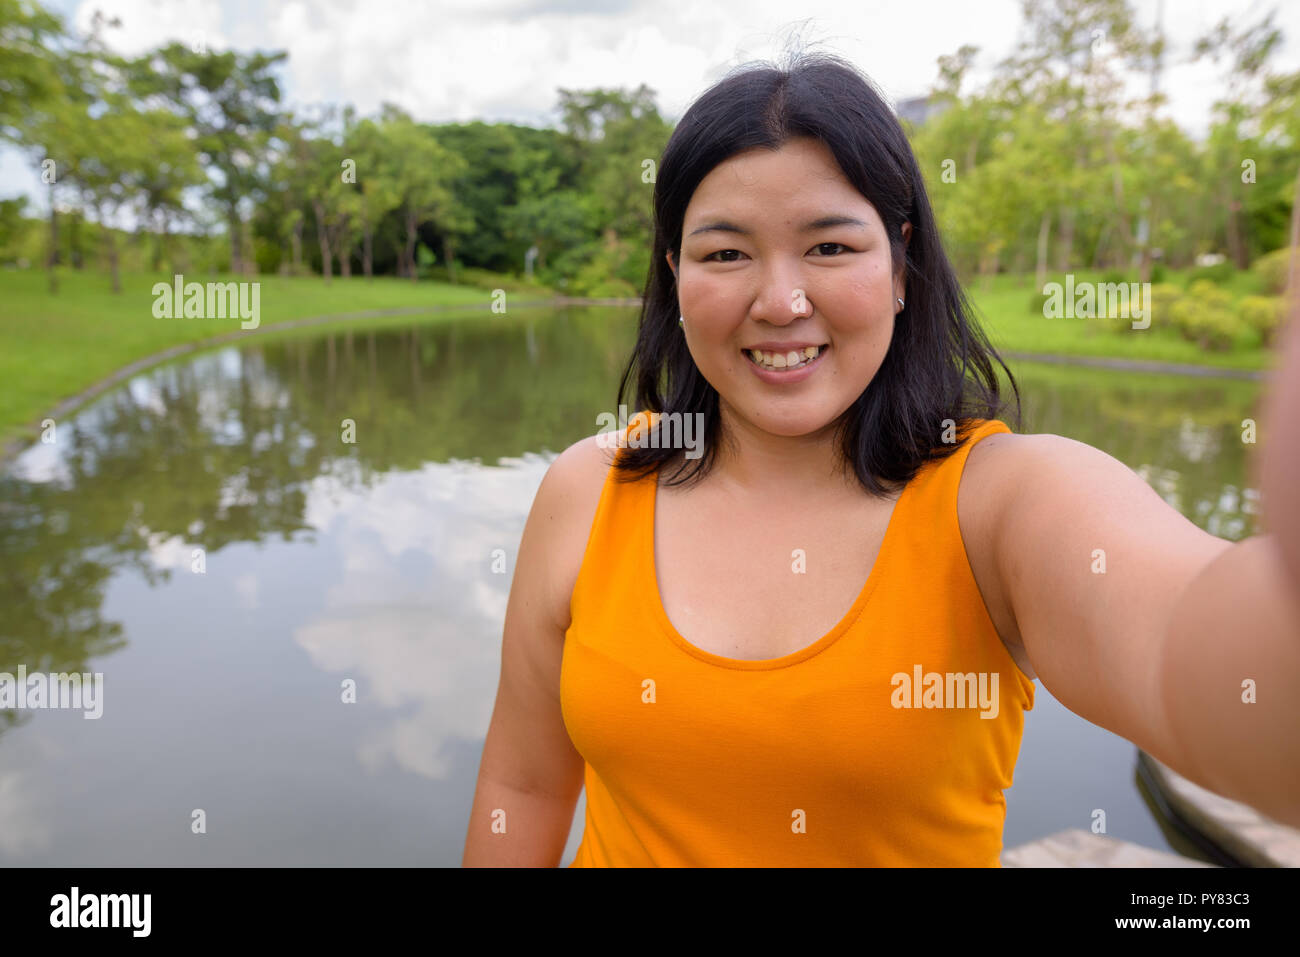 Personale punto di vista di bella donna sovrappeso tenendo selfie in posizione di parcheggio Foto Stock